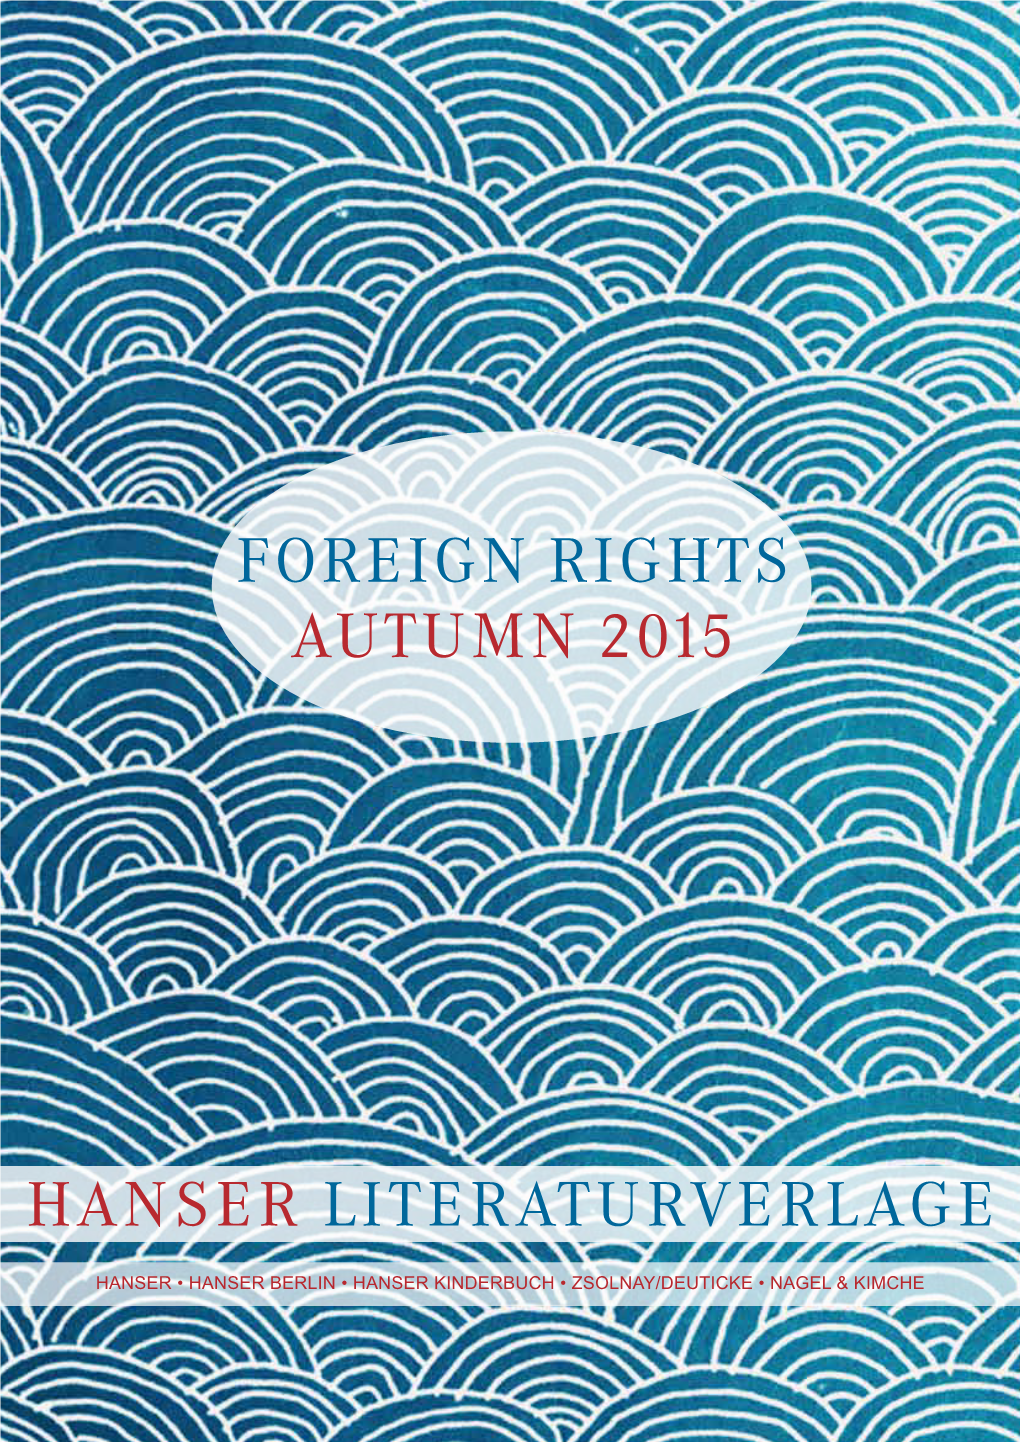 Foreign Rights Autumn 2015 Hanser Literaturverlage